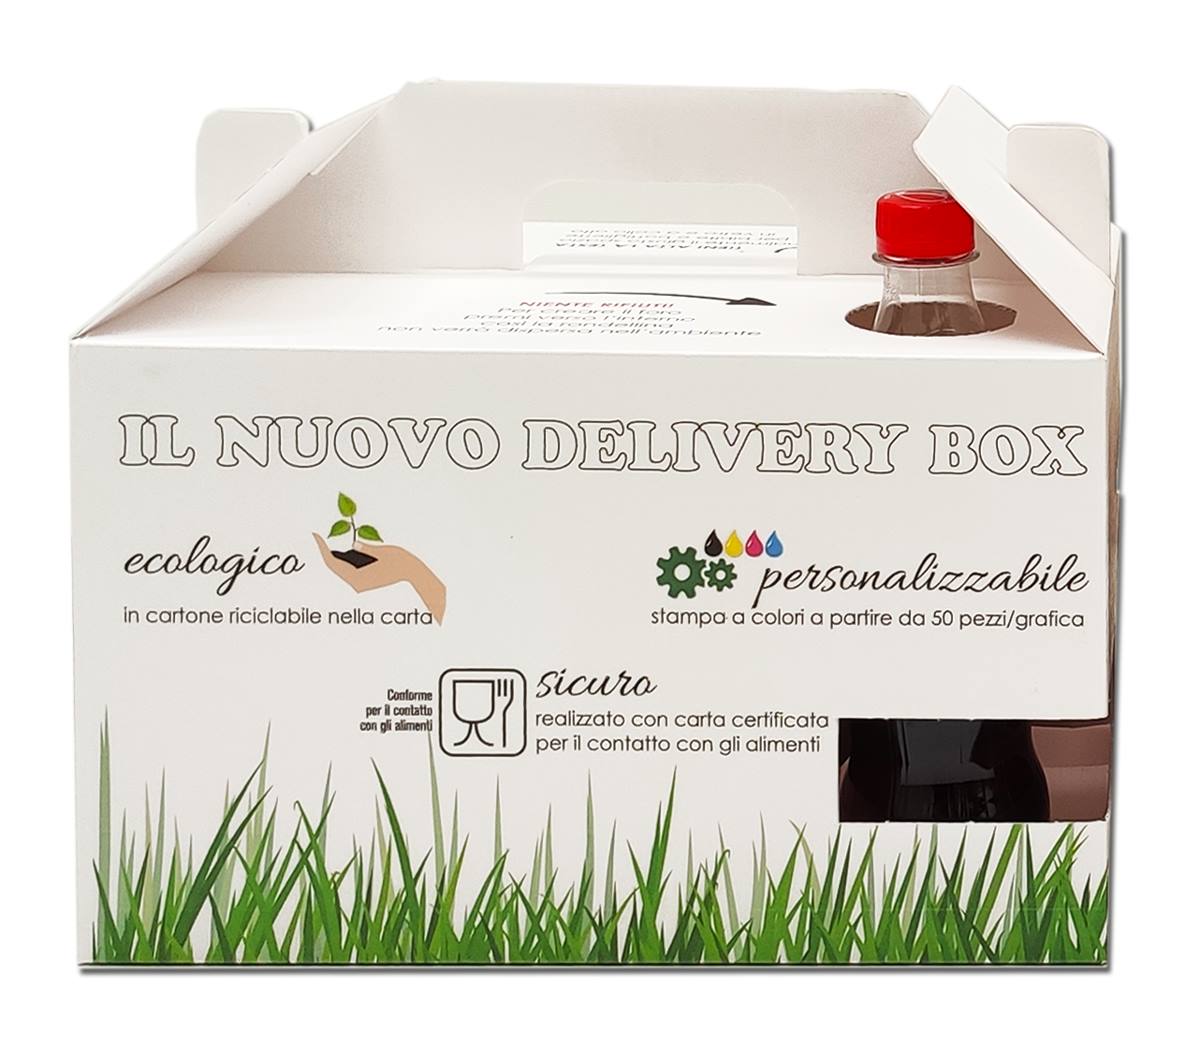 Delivery Box Media, Prezzo Delivery Box Media, Offerta Delivery Box Media